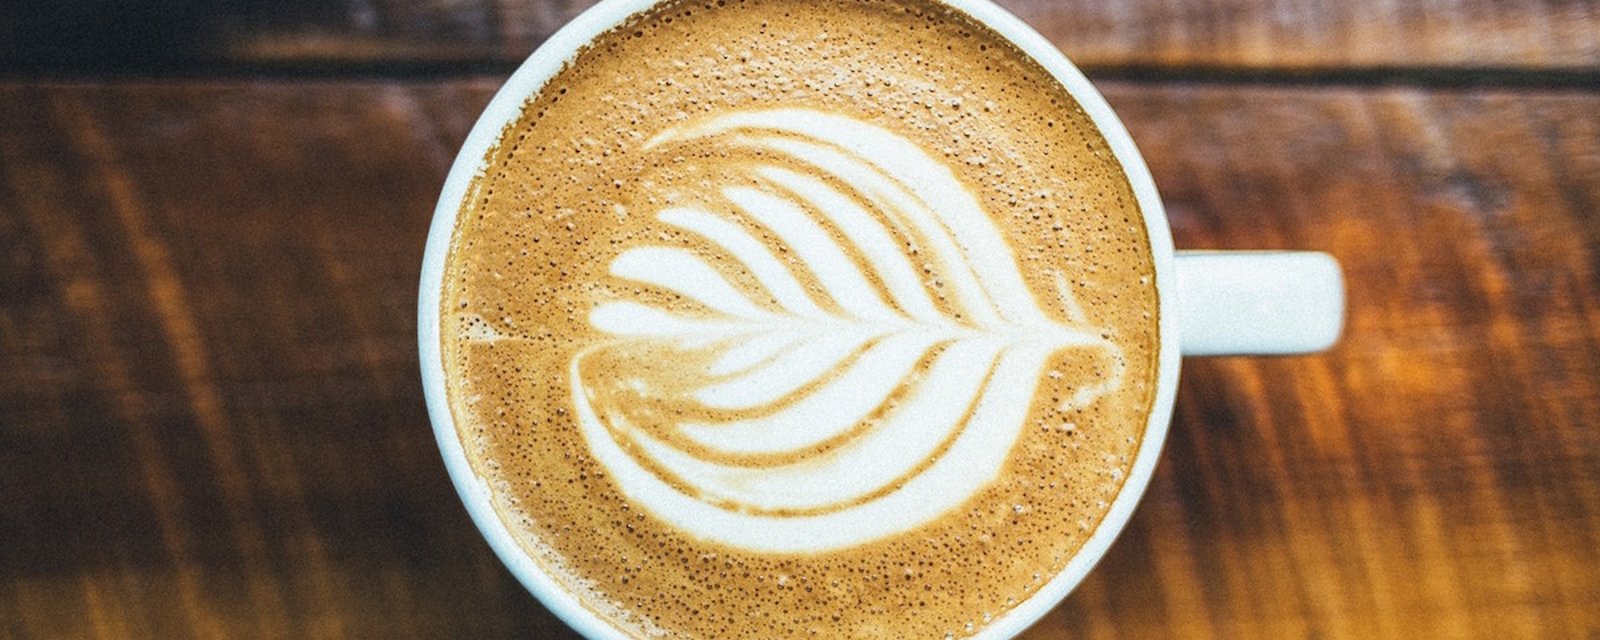 8 façons délicieuses de rendre votre tasse de café plus santé